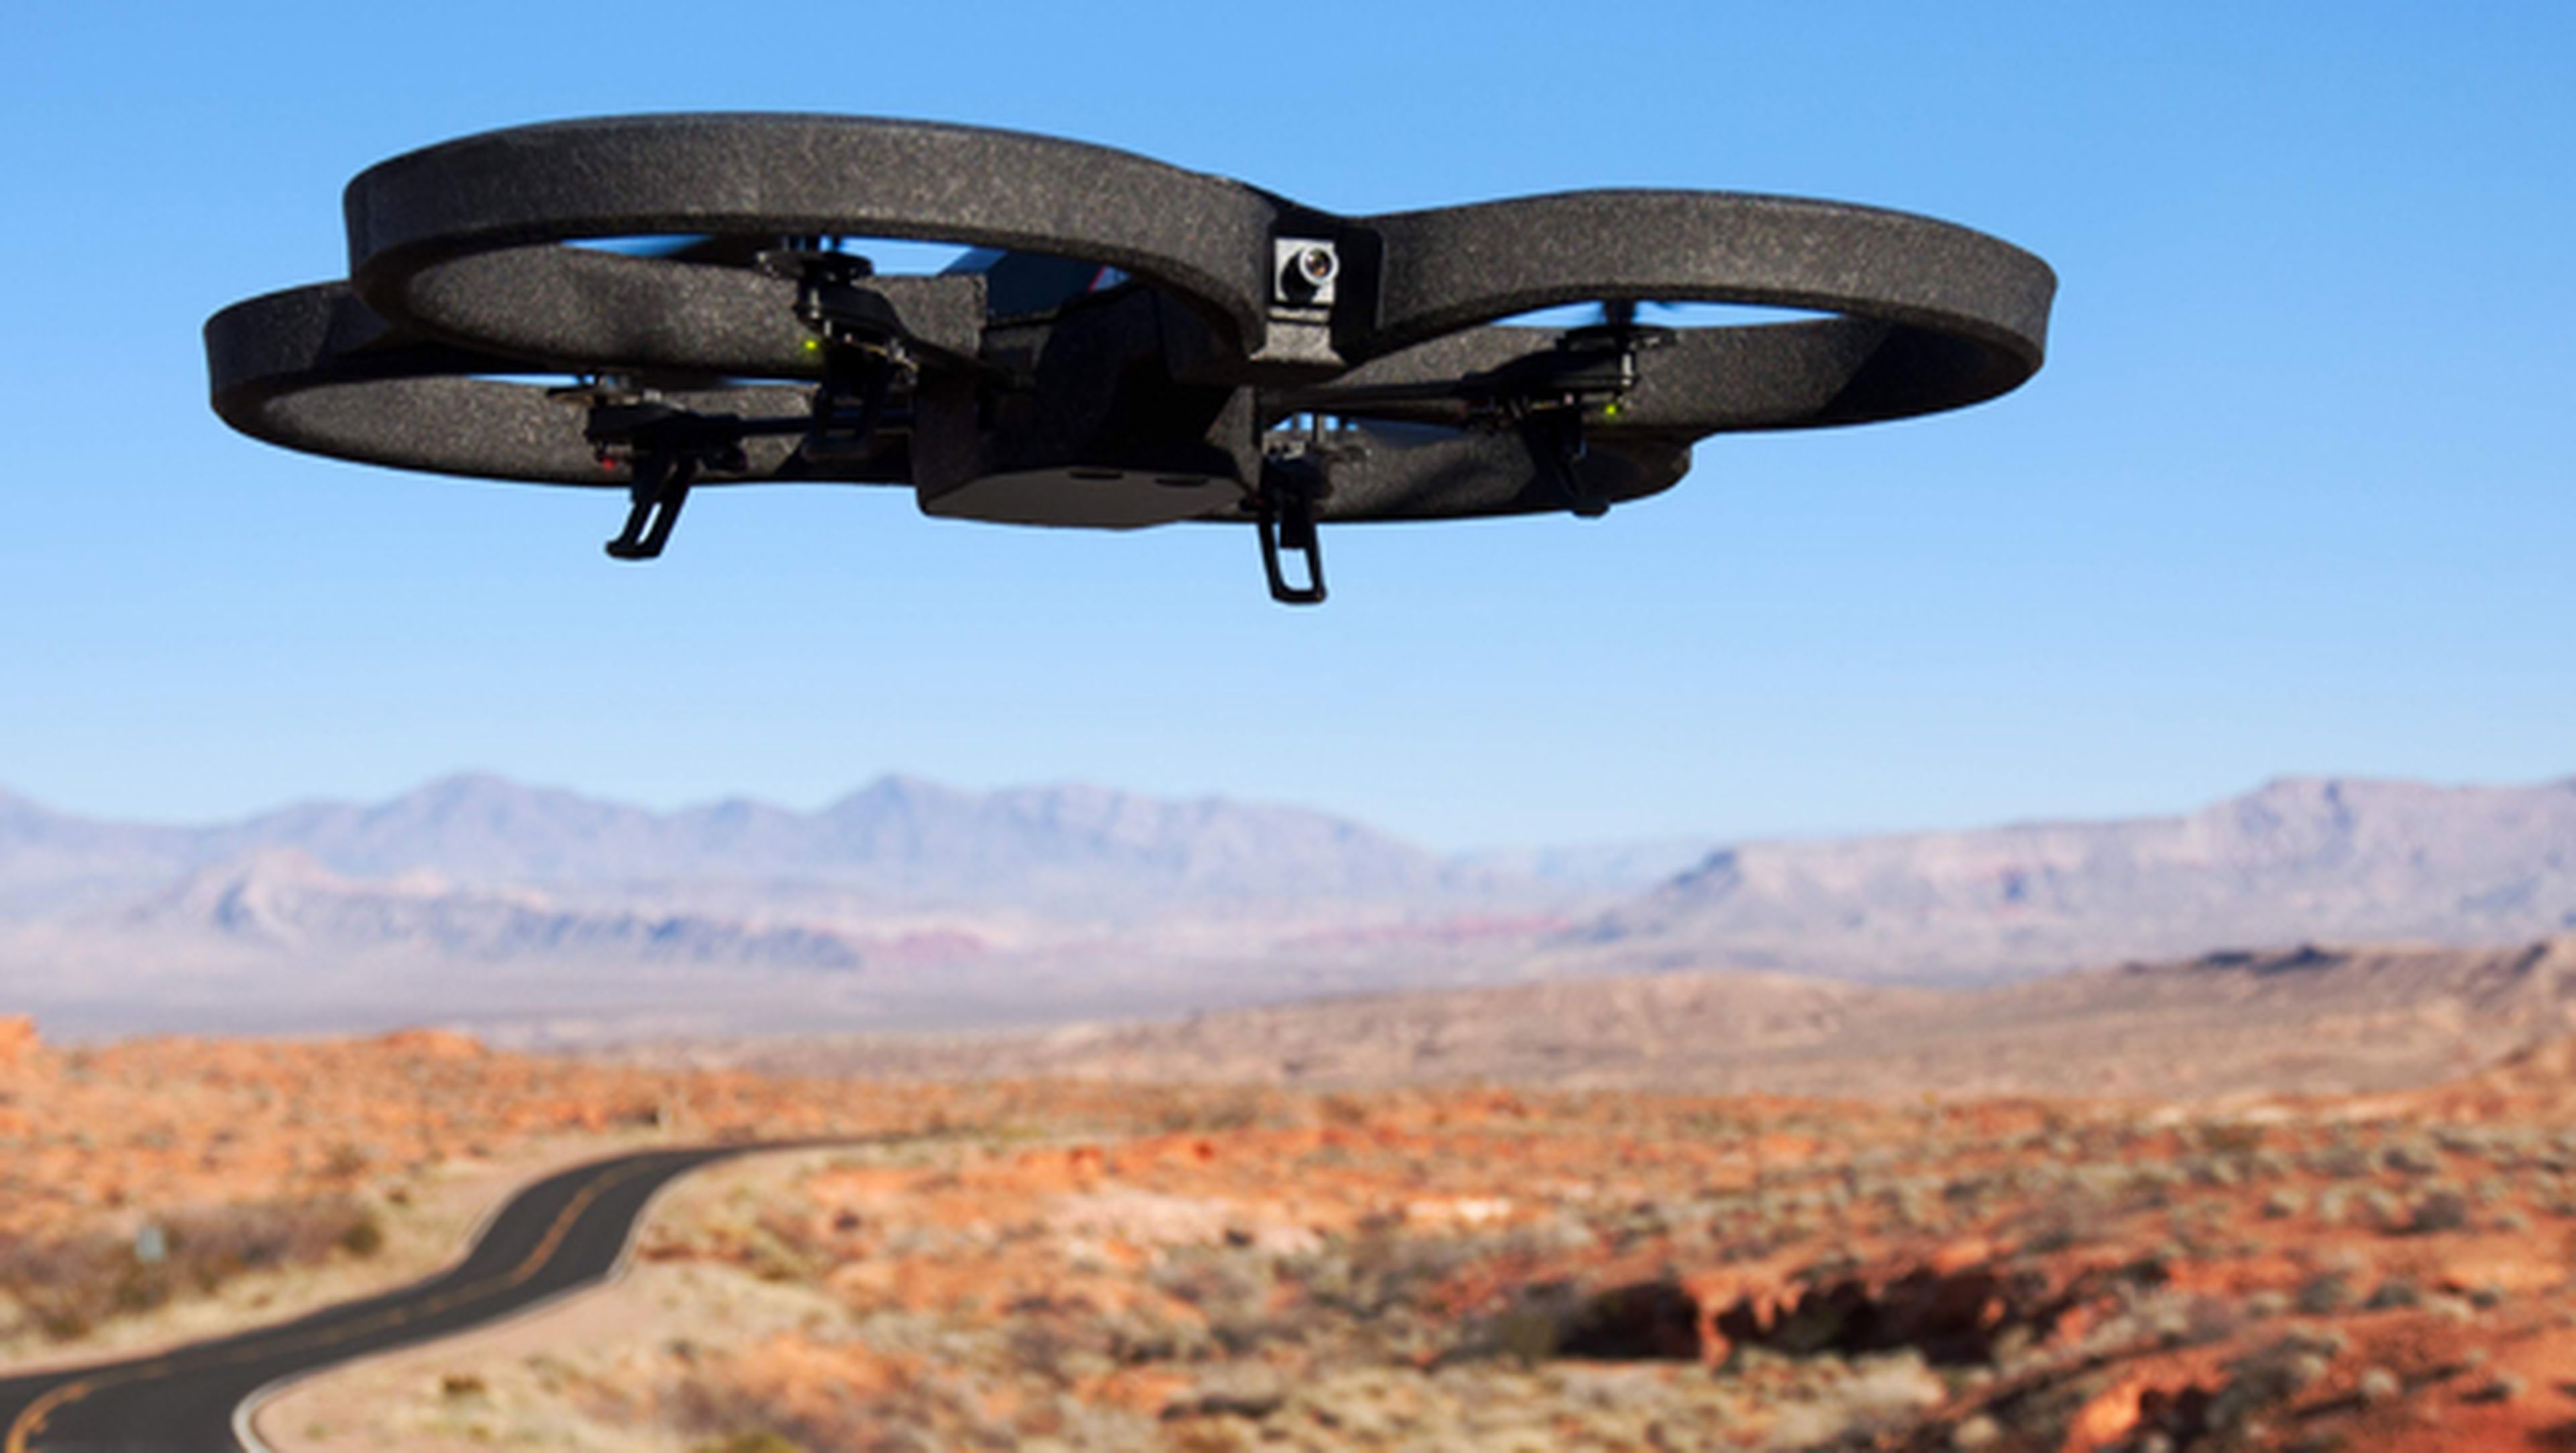 Los drones suponen una amenaza para la seguridad de los aviones tripulados. Podrían provocar accidentes aéreos